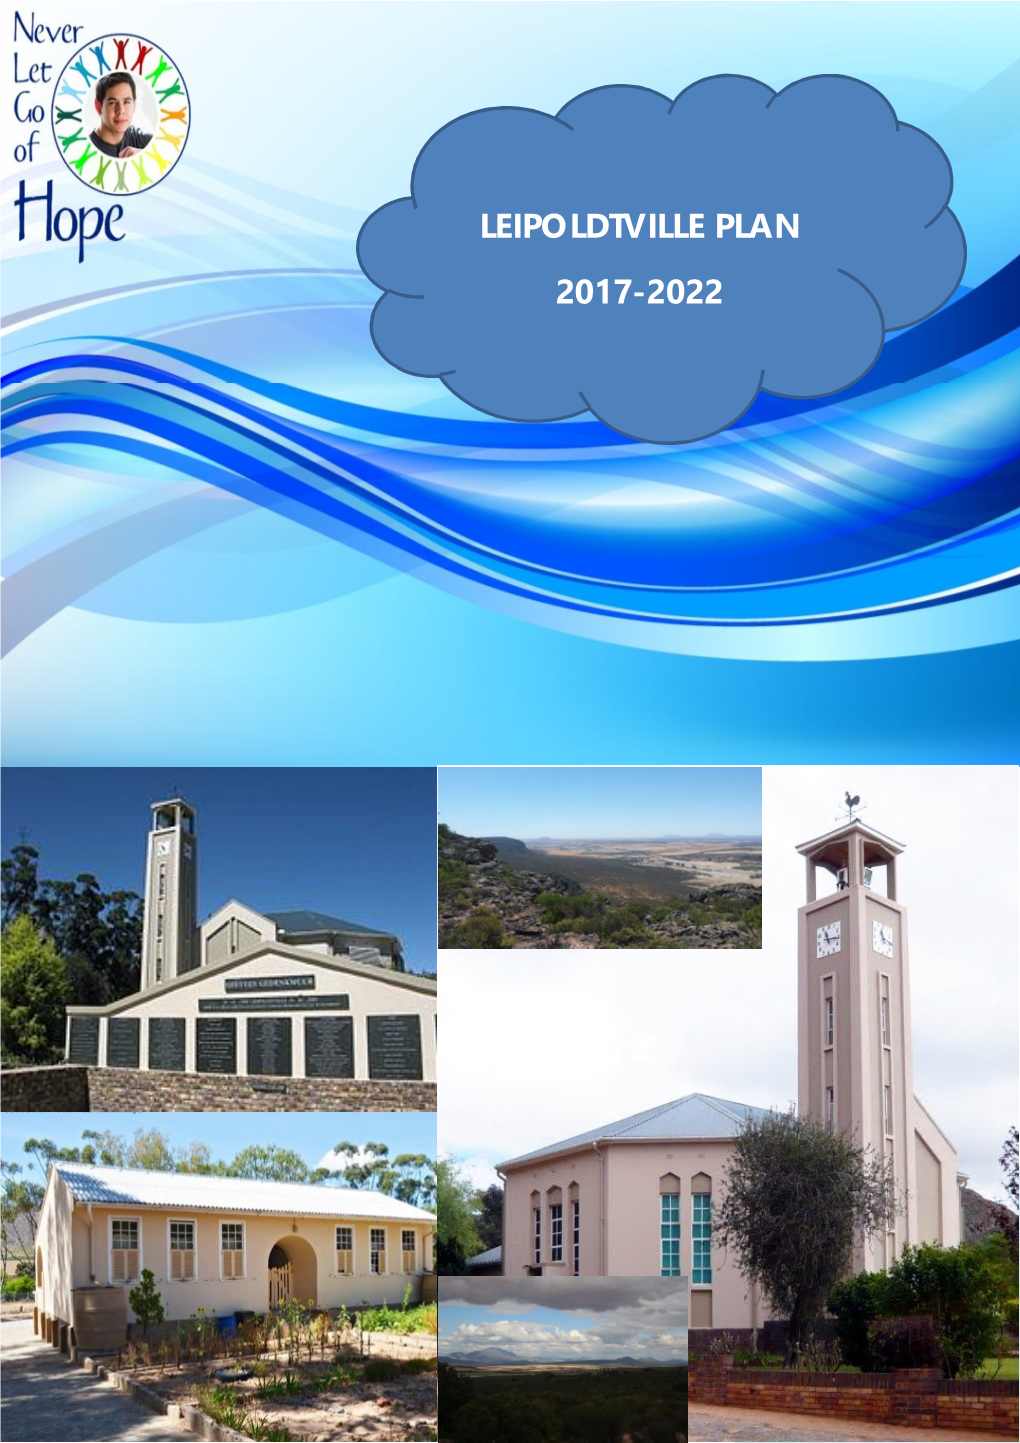 Leipoldtville Plan 2017-2022